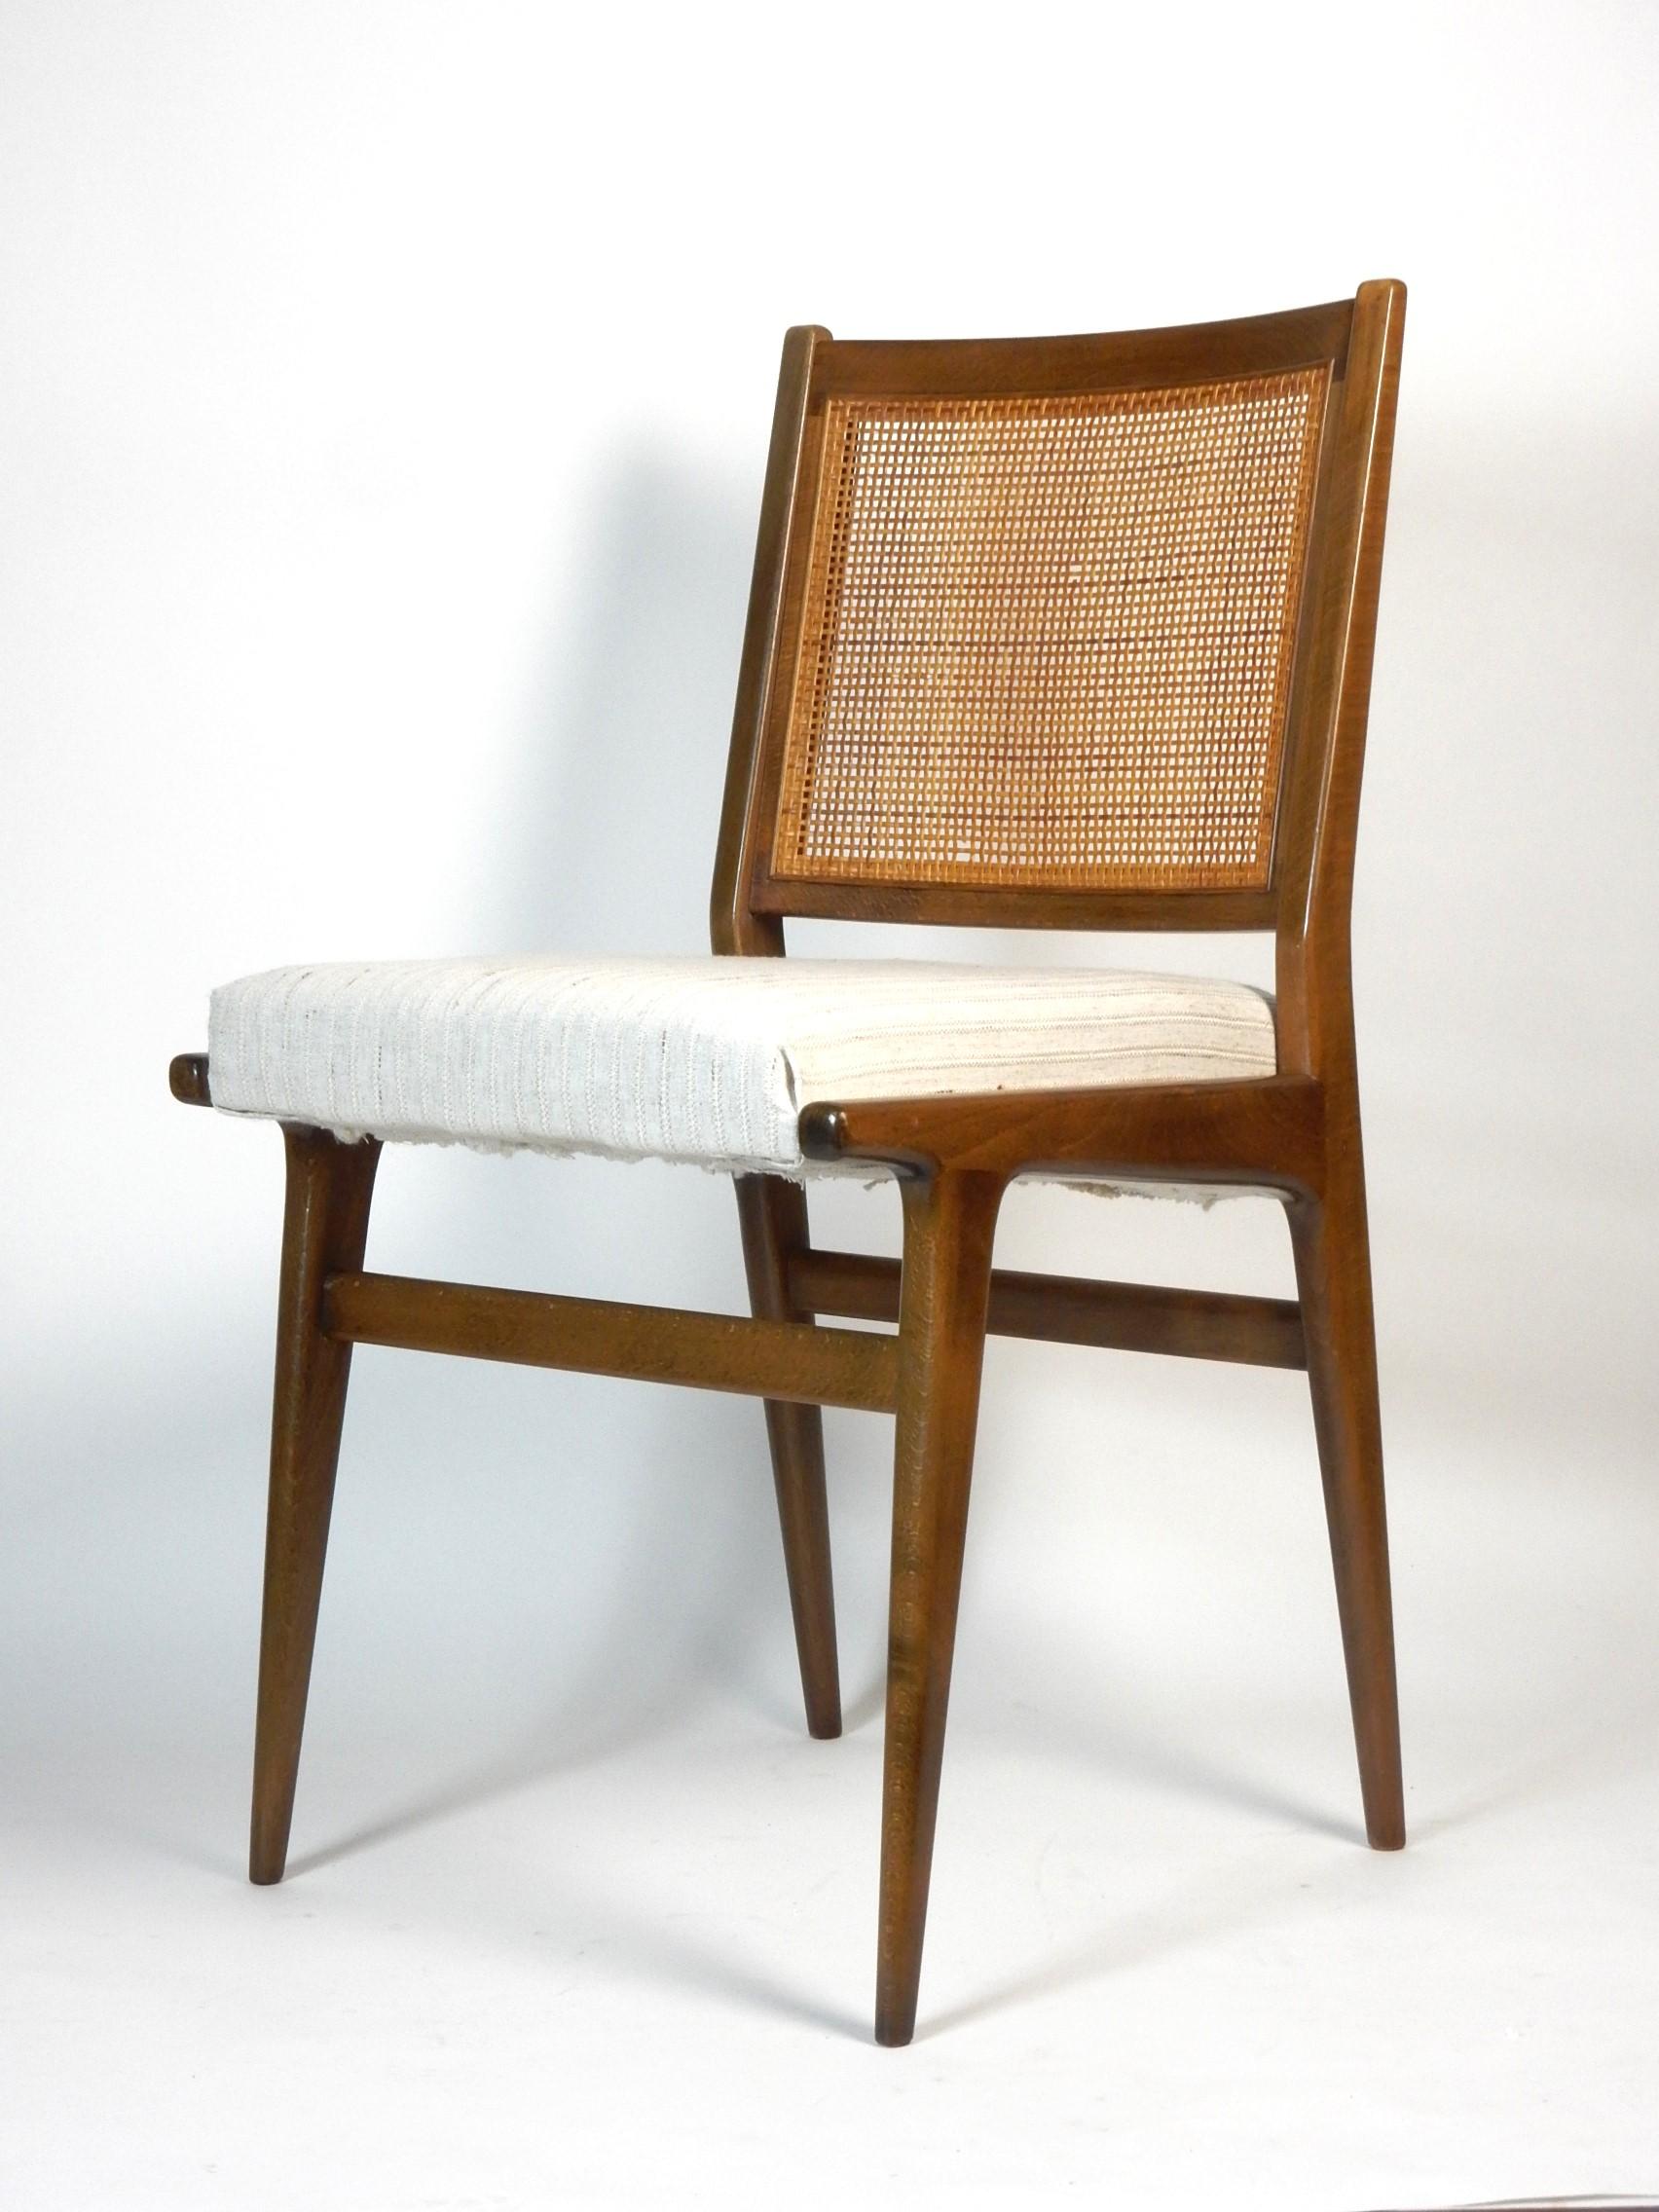 Schönes Paar Esszimmerstühle mit Rohrrücken, entworfen von Jens Rison für J.O. Carlssons Möbelindustri.
Vollständig original bis auf die Sitzbezüge. 
Gut gepflegt, wie Sie auf den Fotos sehen können. 
Ein paar kleine Bereiche, in denen das Rohr